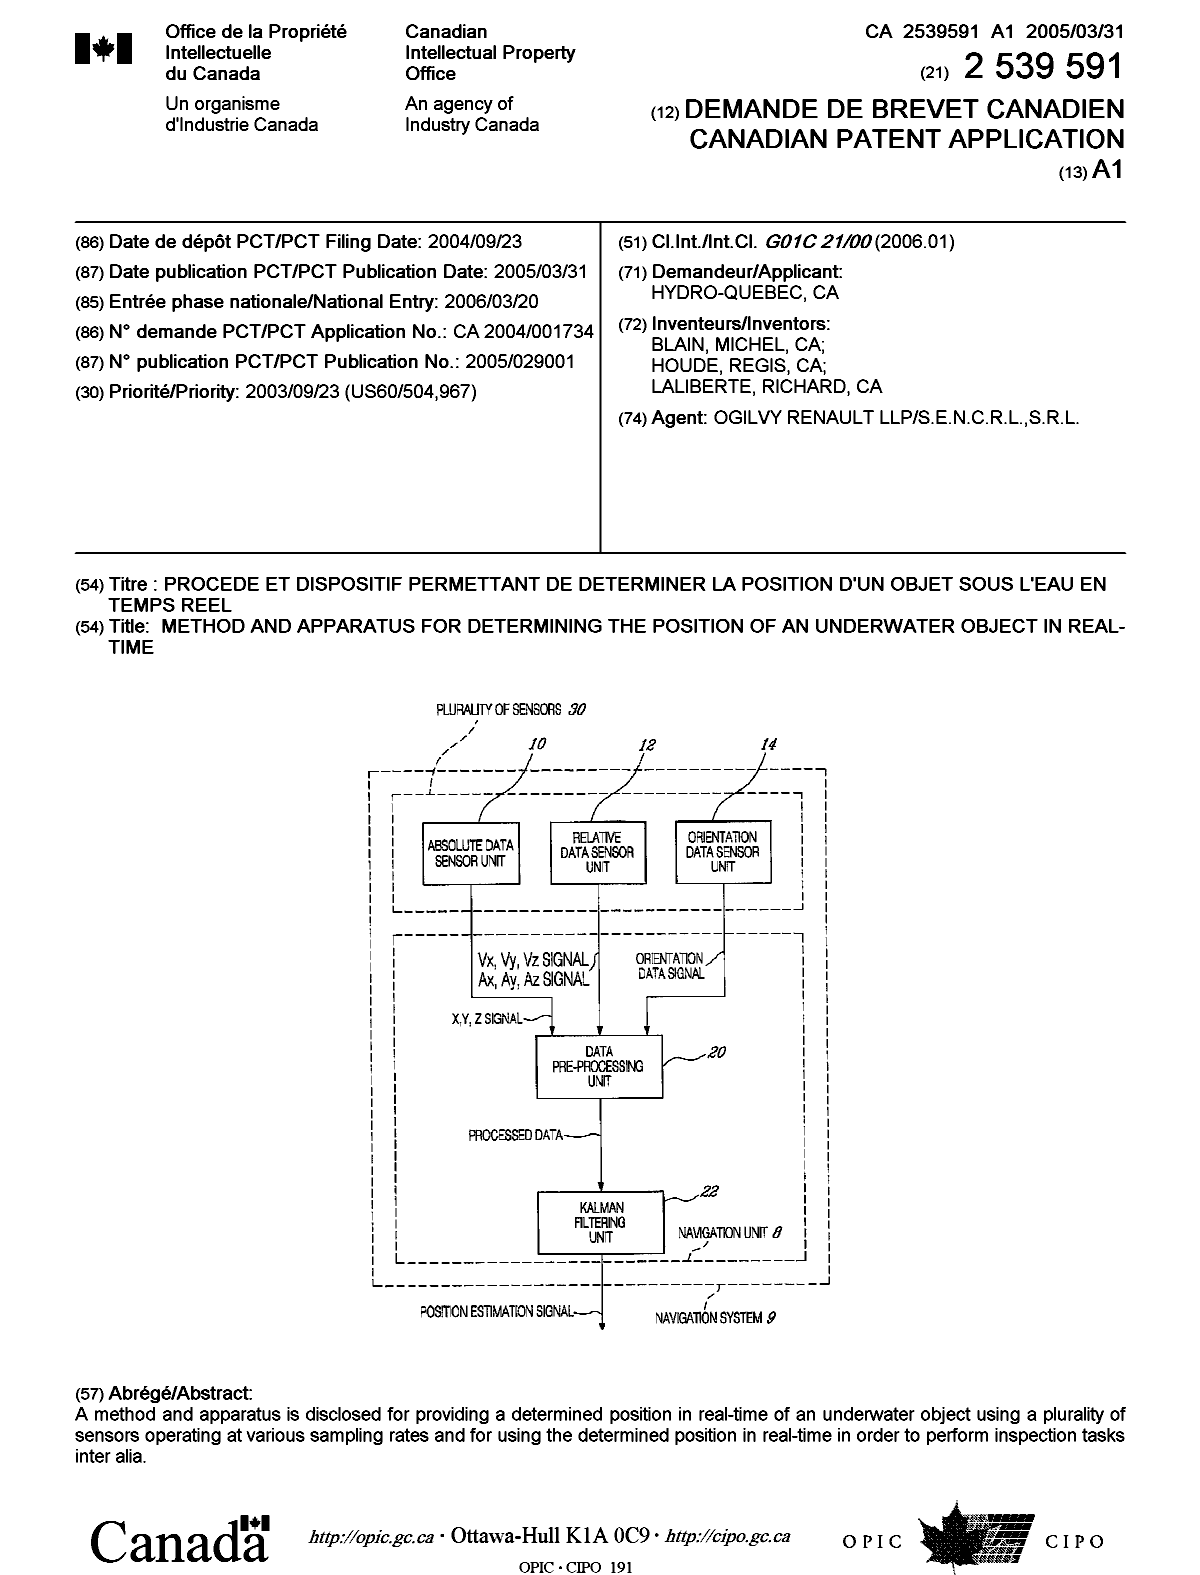 Document de brevet canadien 2539591. Page couverture 20051226. Image 1 de 1